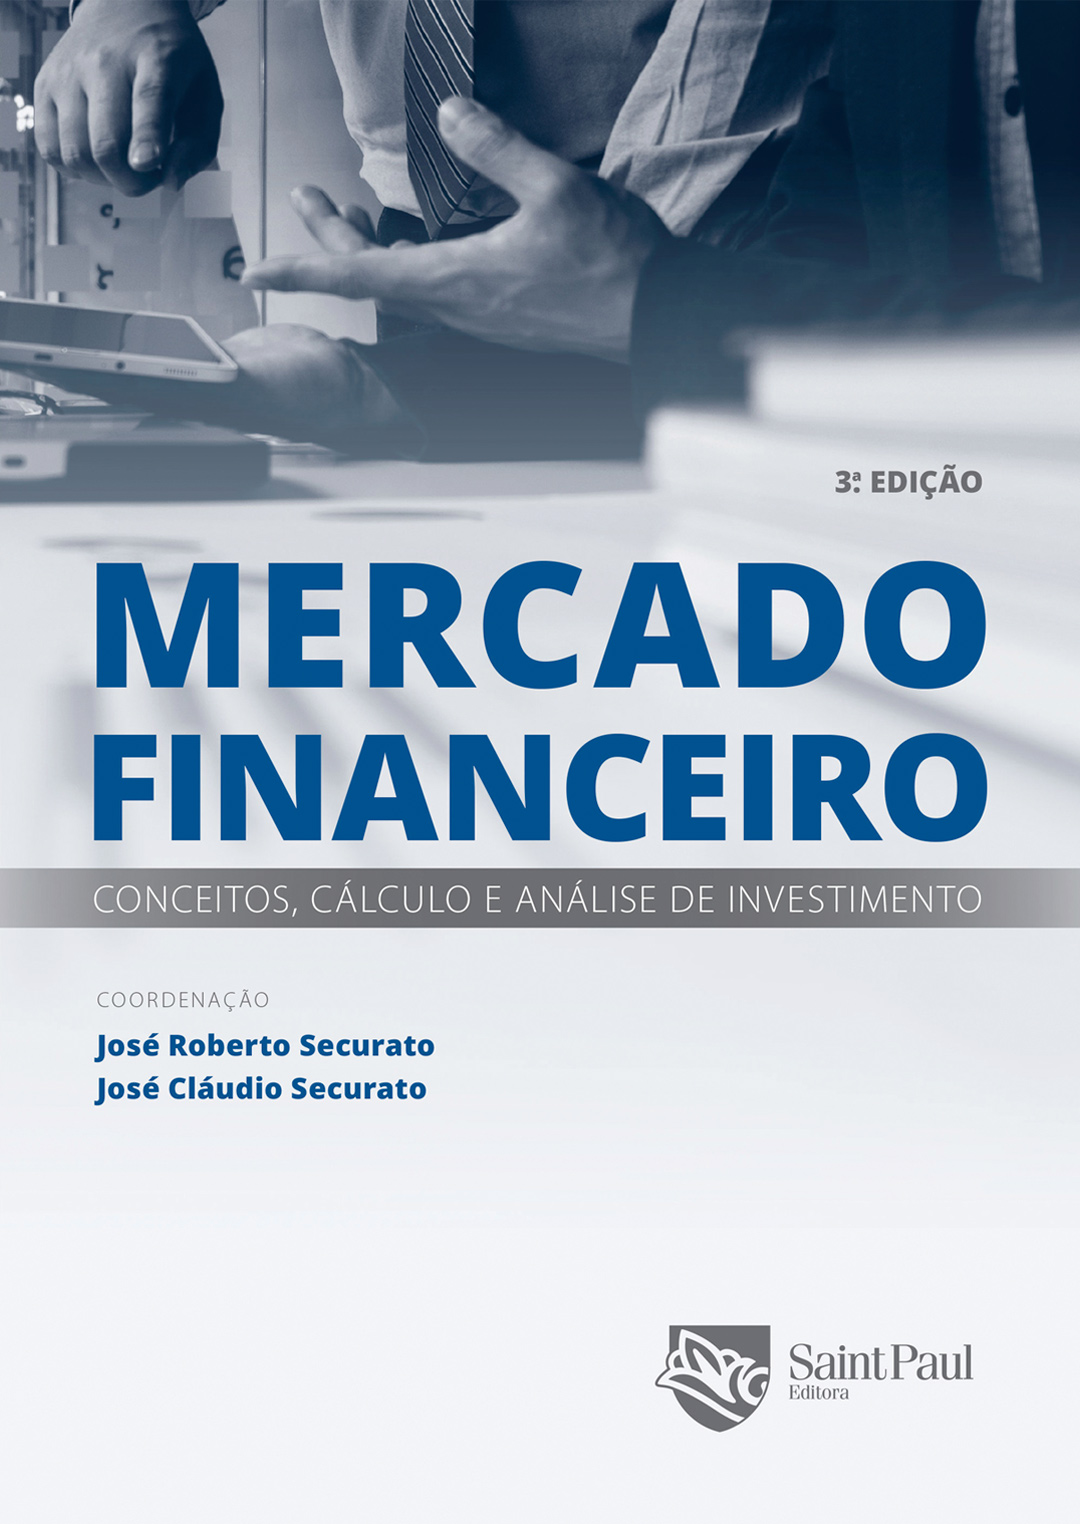 Mercado financeiro - Conceitos, cálculo e análise de investimento